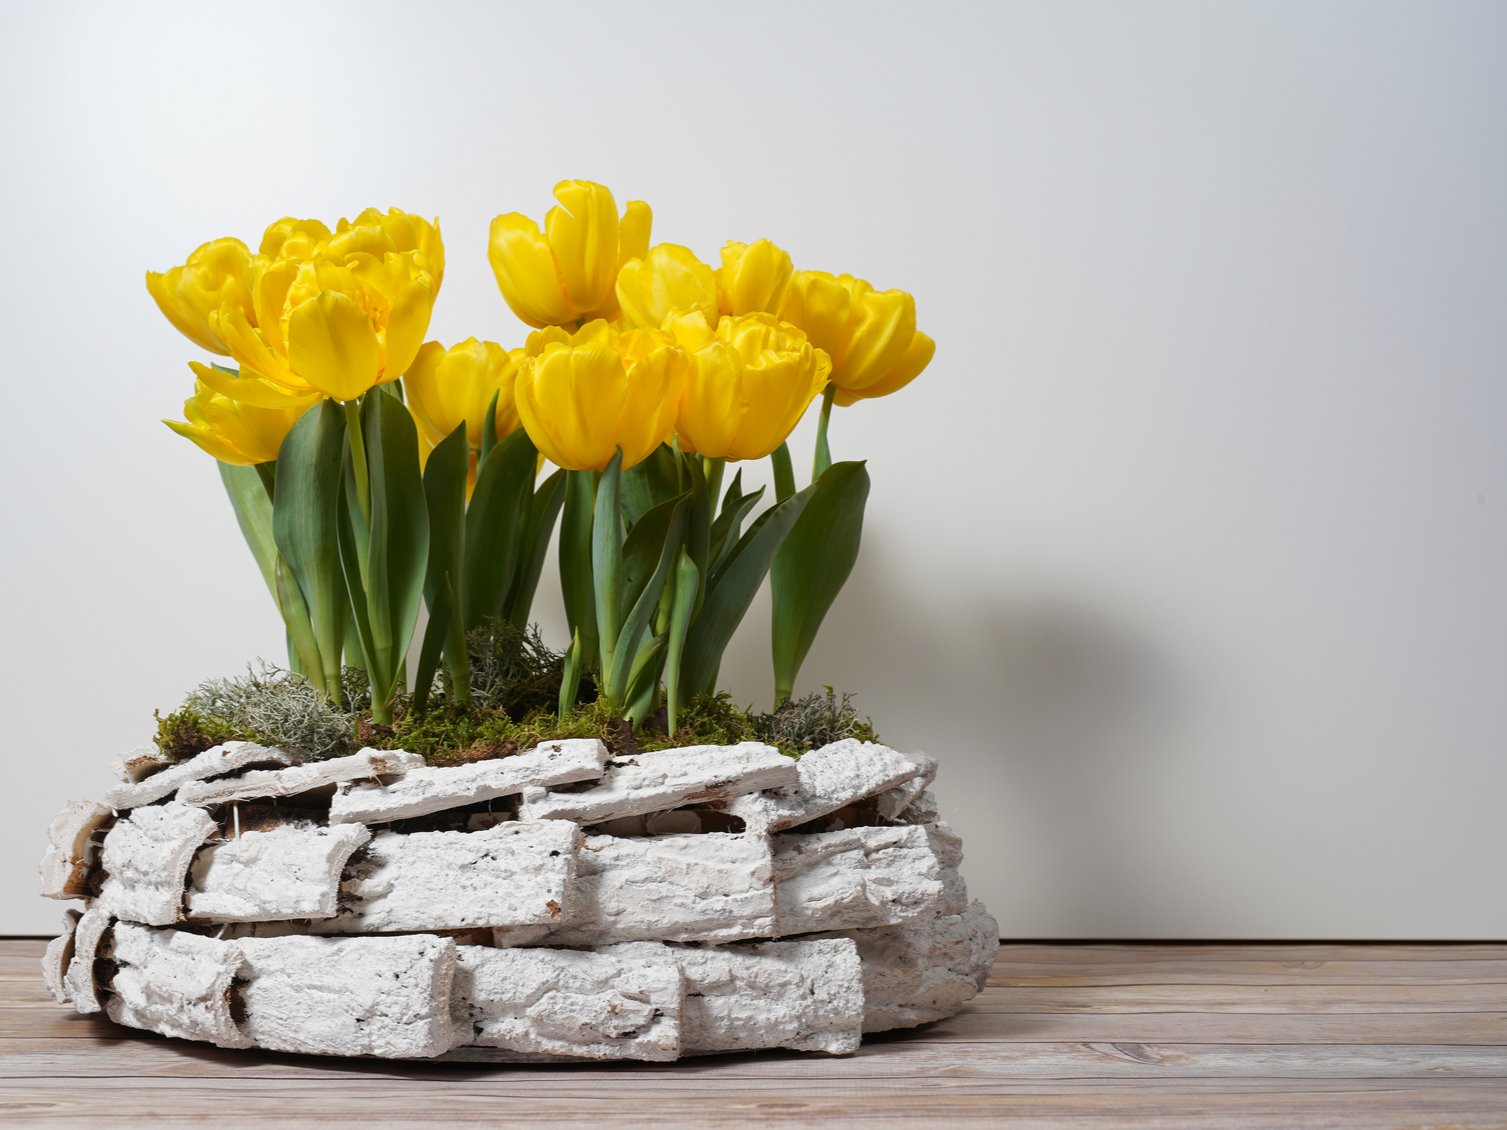 Coltivare i tulipani in vaso: consigli e suggerimenti - Donna Moderna